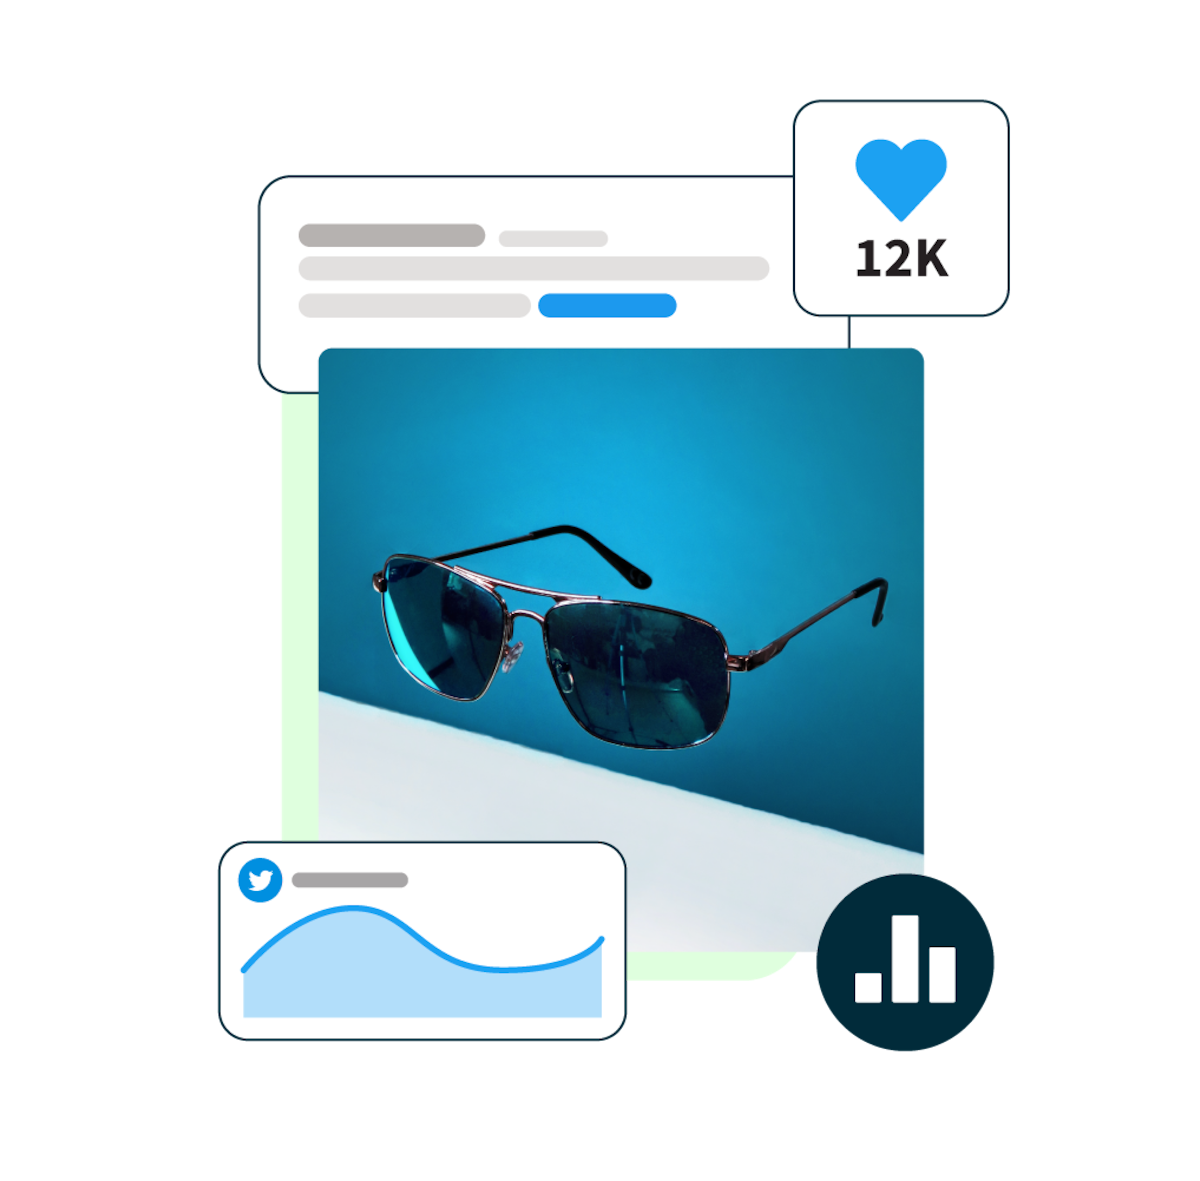 imagem de óculos de sol em suspensão sobre um fundo azul, com pop-ups de estatísticas de redes sociais ao redor.